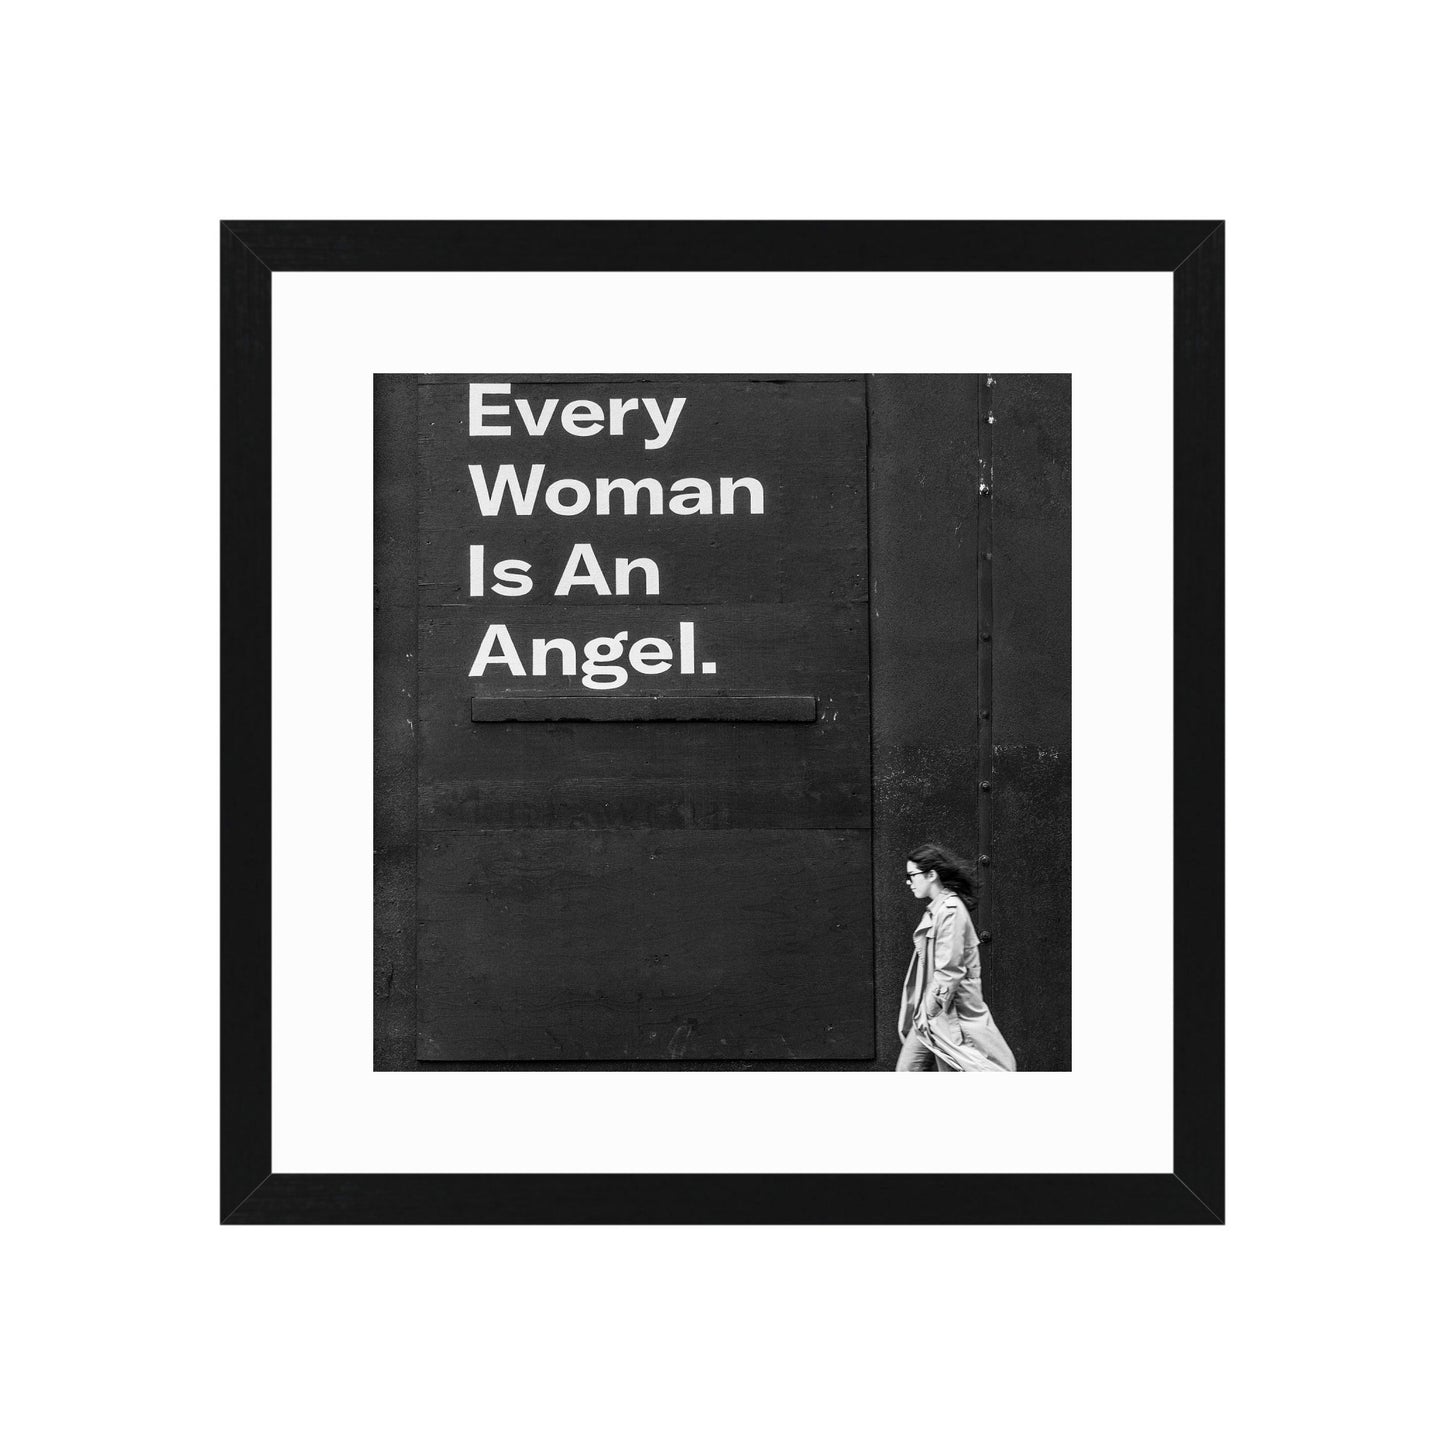 Every Woman is an Angel by Paul Lambert